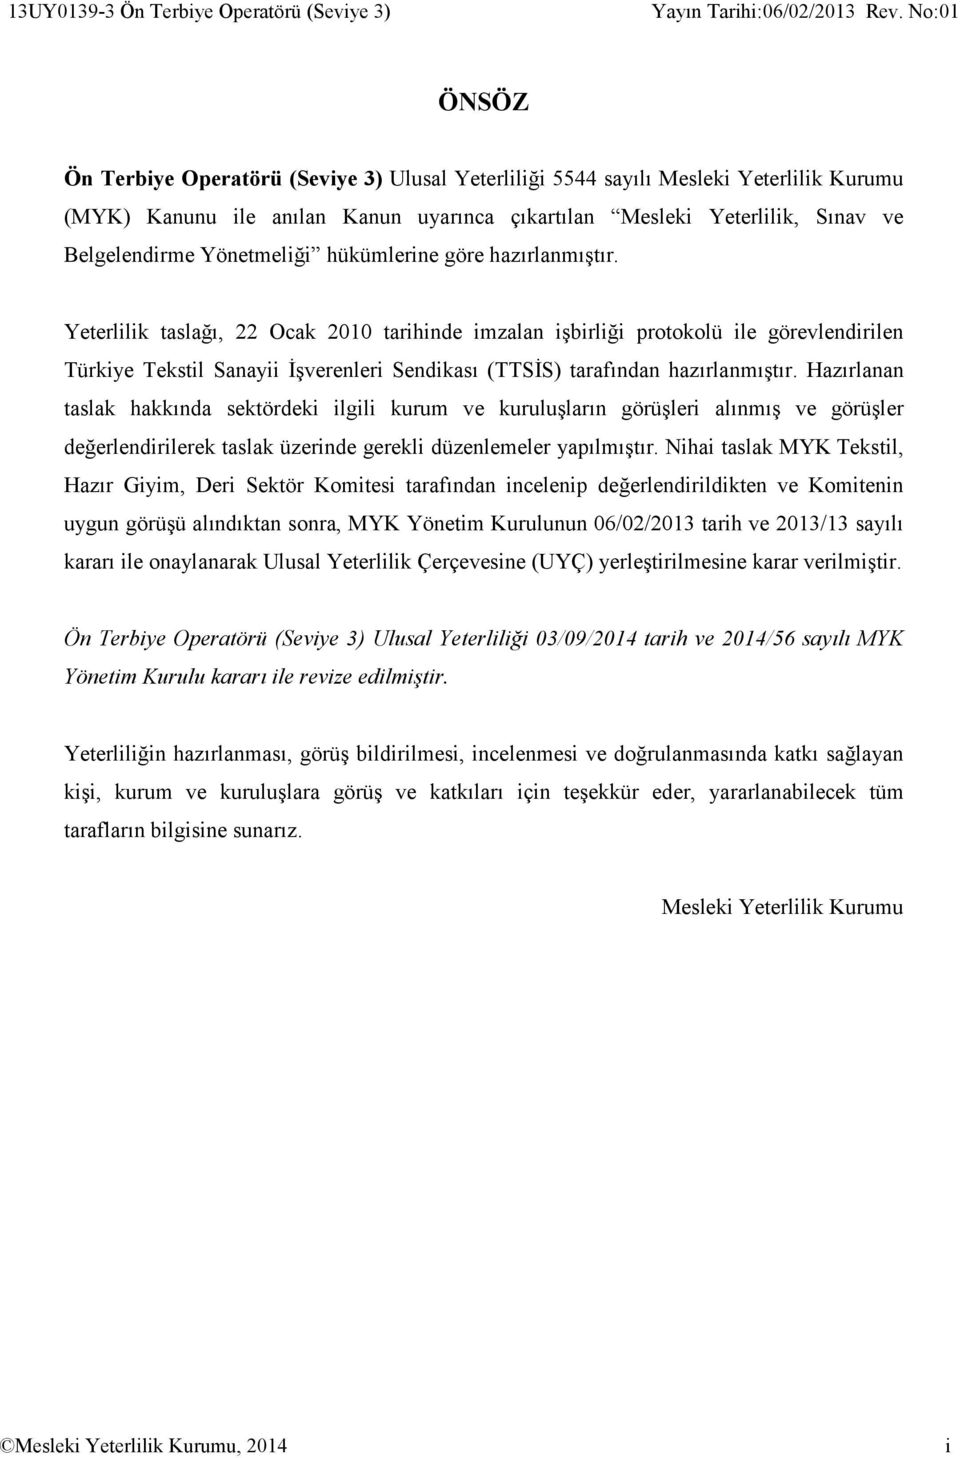 Yeterlilik taslağı, 22 Ocak 2010 tarihinde imzalan işbirliği protokolü ile görevlendirilen Türkiye Tekstil Sanayii İşverenleri Sendikası (TTSİS) tarafından hazırlanmıştır.